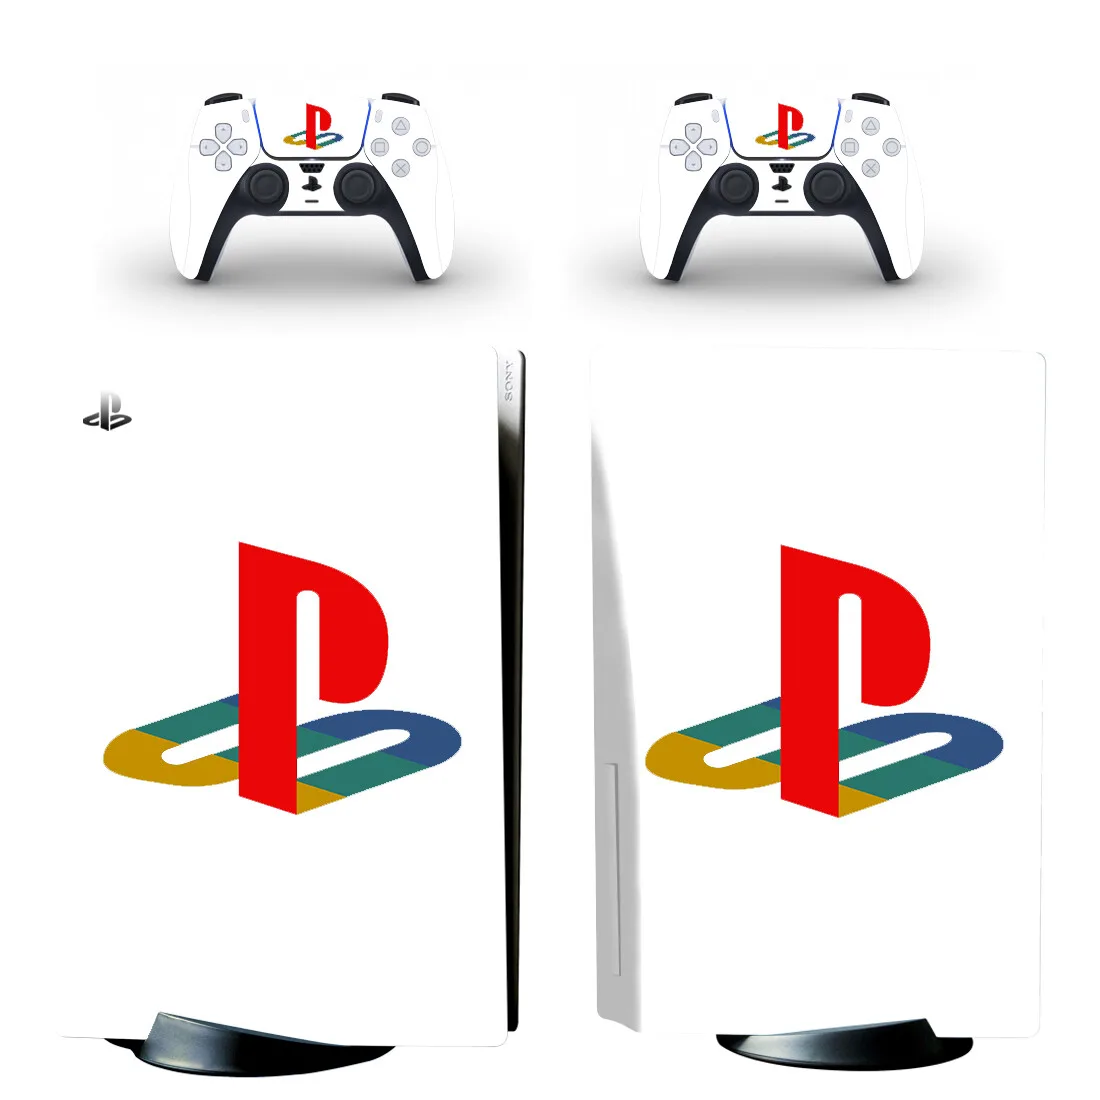 

Наклейка Symbol Design PS5 Standard Disc Edition, Виниловая наклейка для консоли PlayStation 5 и контроллера PS5 Disk